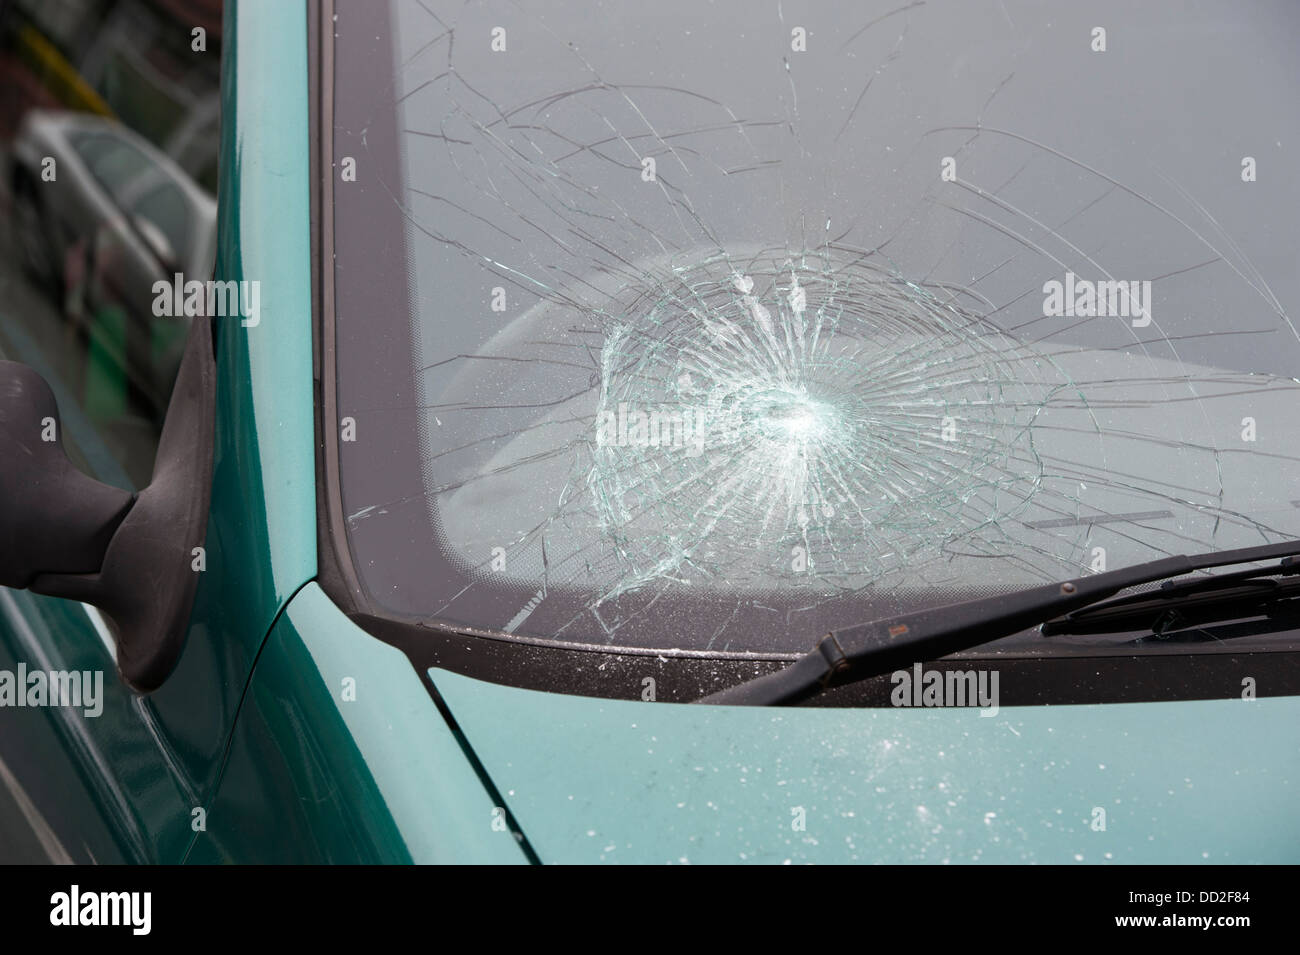 Auto Unfall zerschmetterte Frontscheibe oder Frontscheibe Stockfotografie -  Alamy